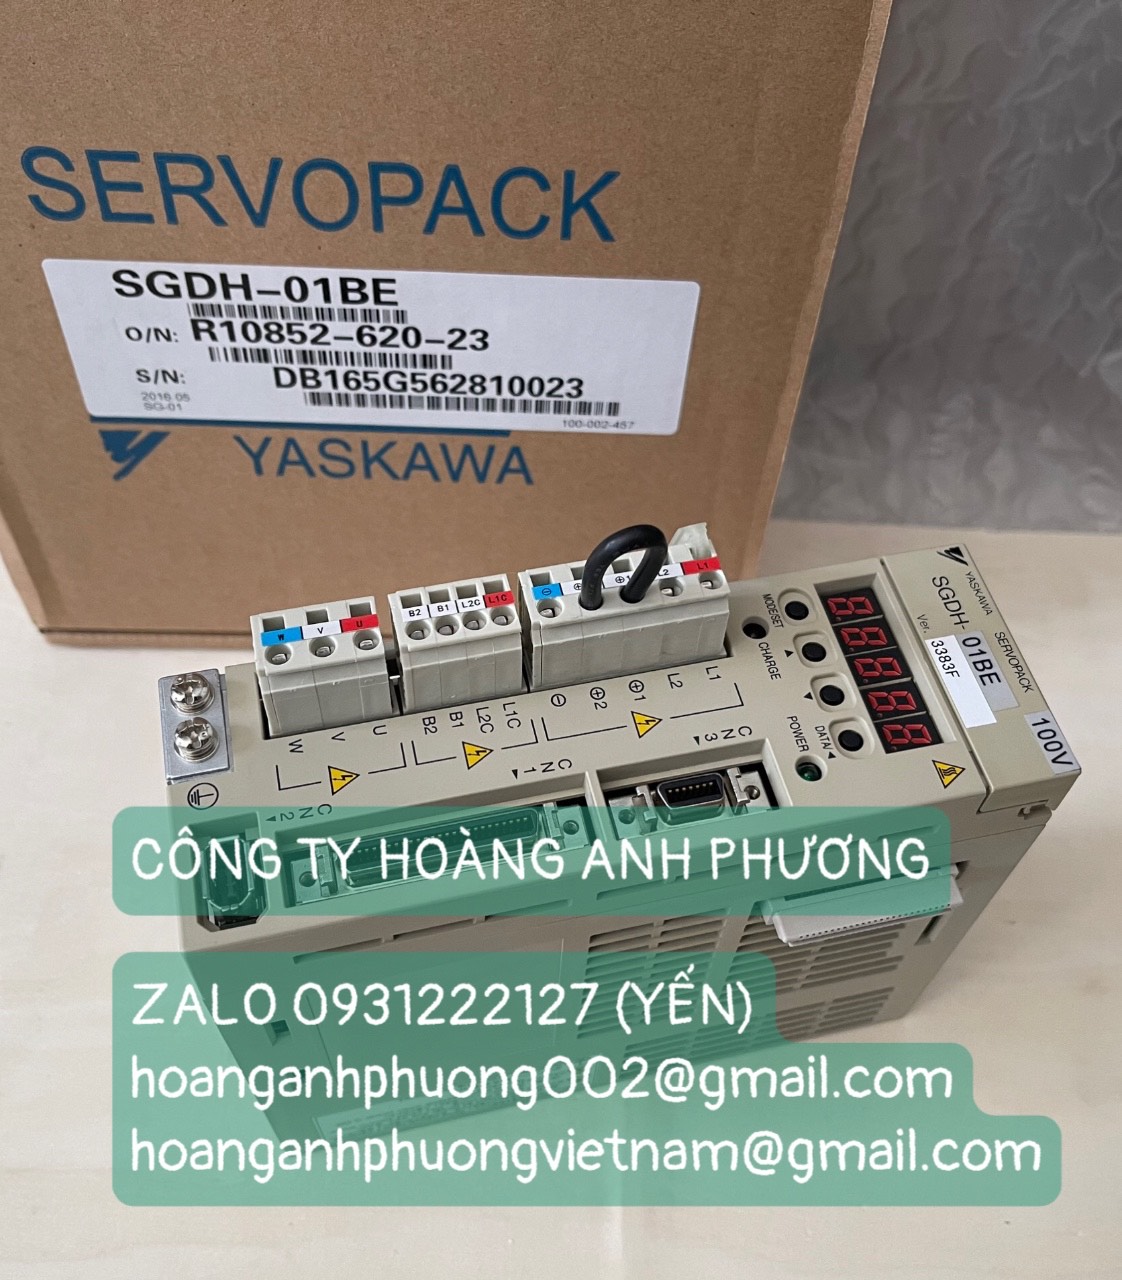 Servopack SGDH-01BE Yaskawa mới 100% Bảo hành 12 tháng